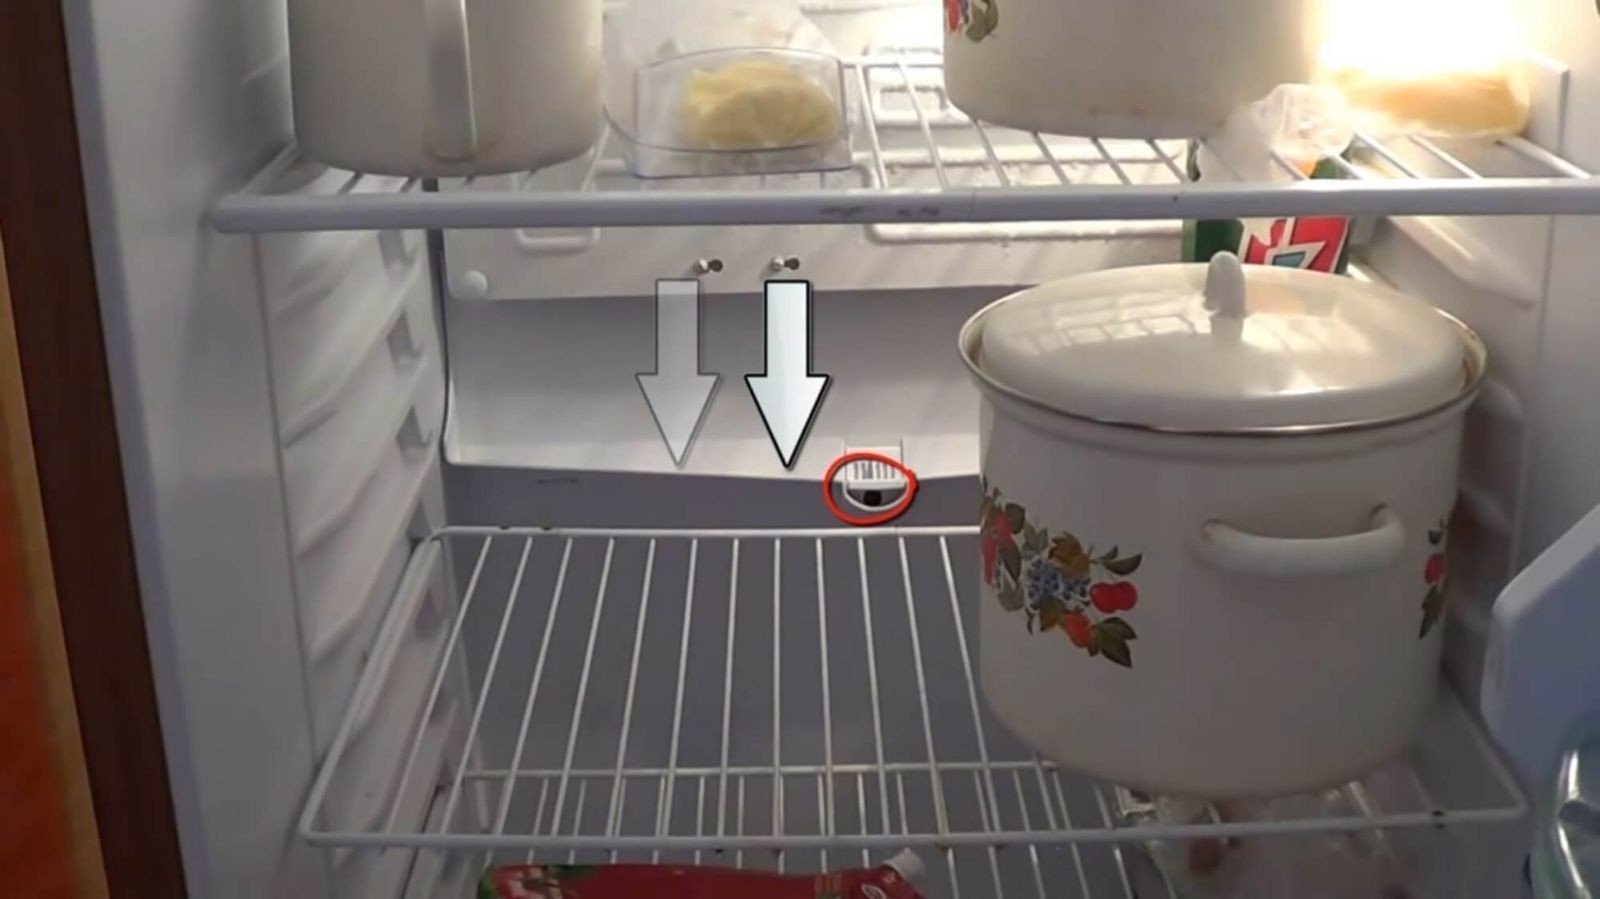 Дренажное отверстие в холодильнике